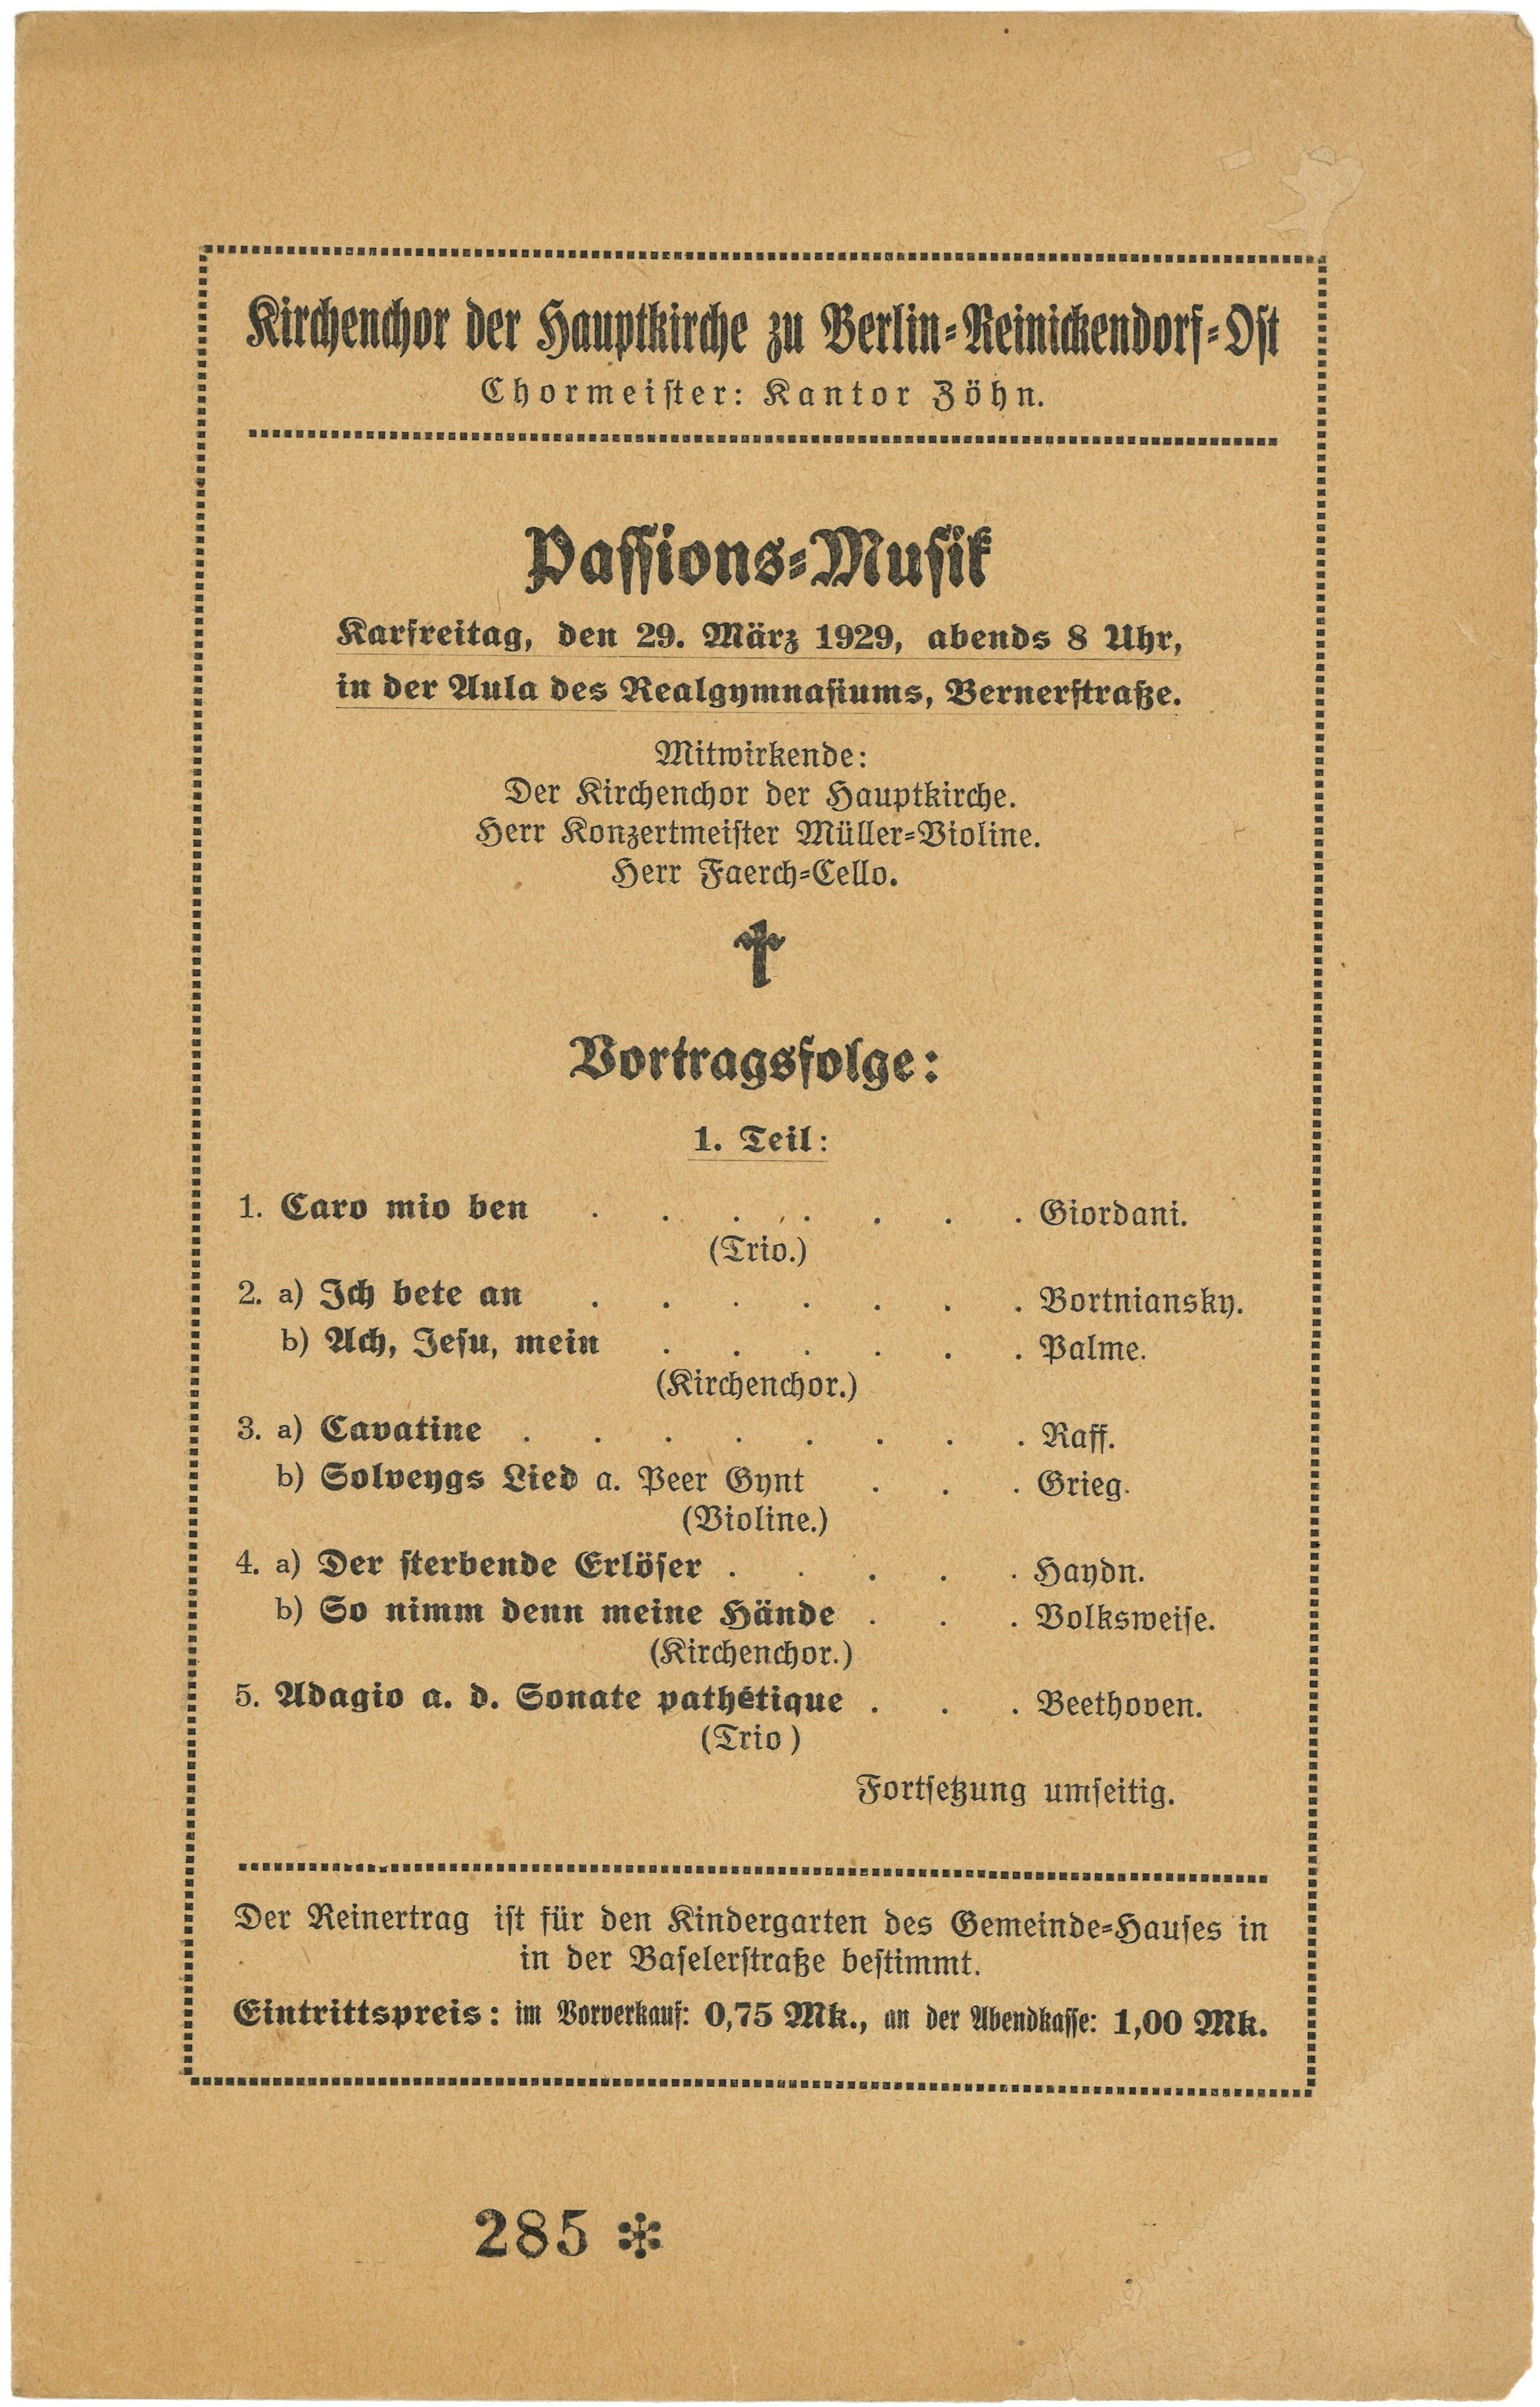 Programm der Passions-Musik in der Aula des Realgymnasums in Berlin-Reinickendorf am 29. März 1929 (Landesgeschichtliche Vereinigung für die Mark Brandenburg e.V., Archiv CC BY)